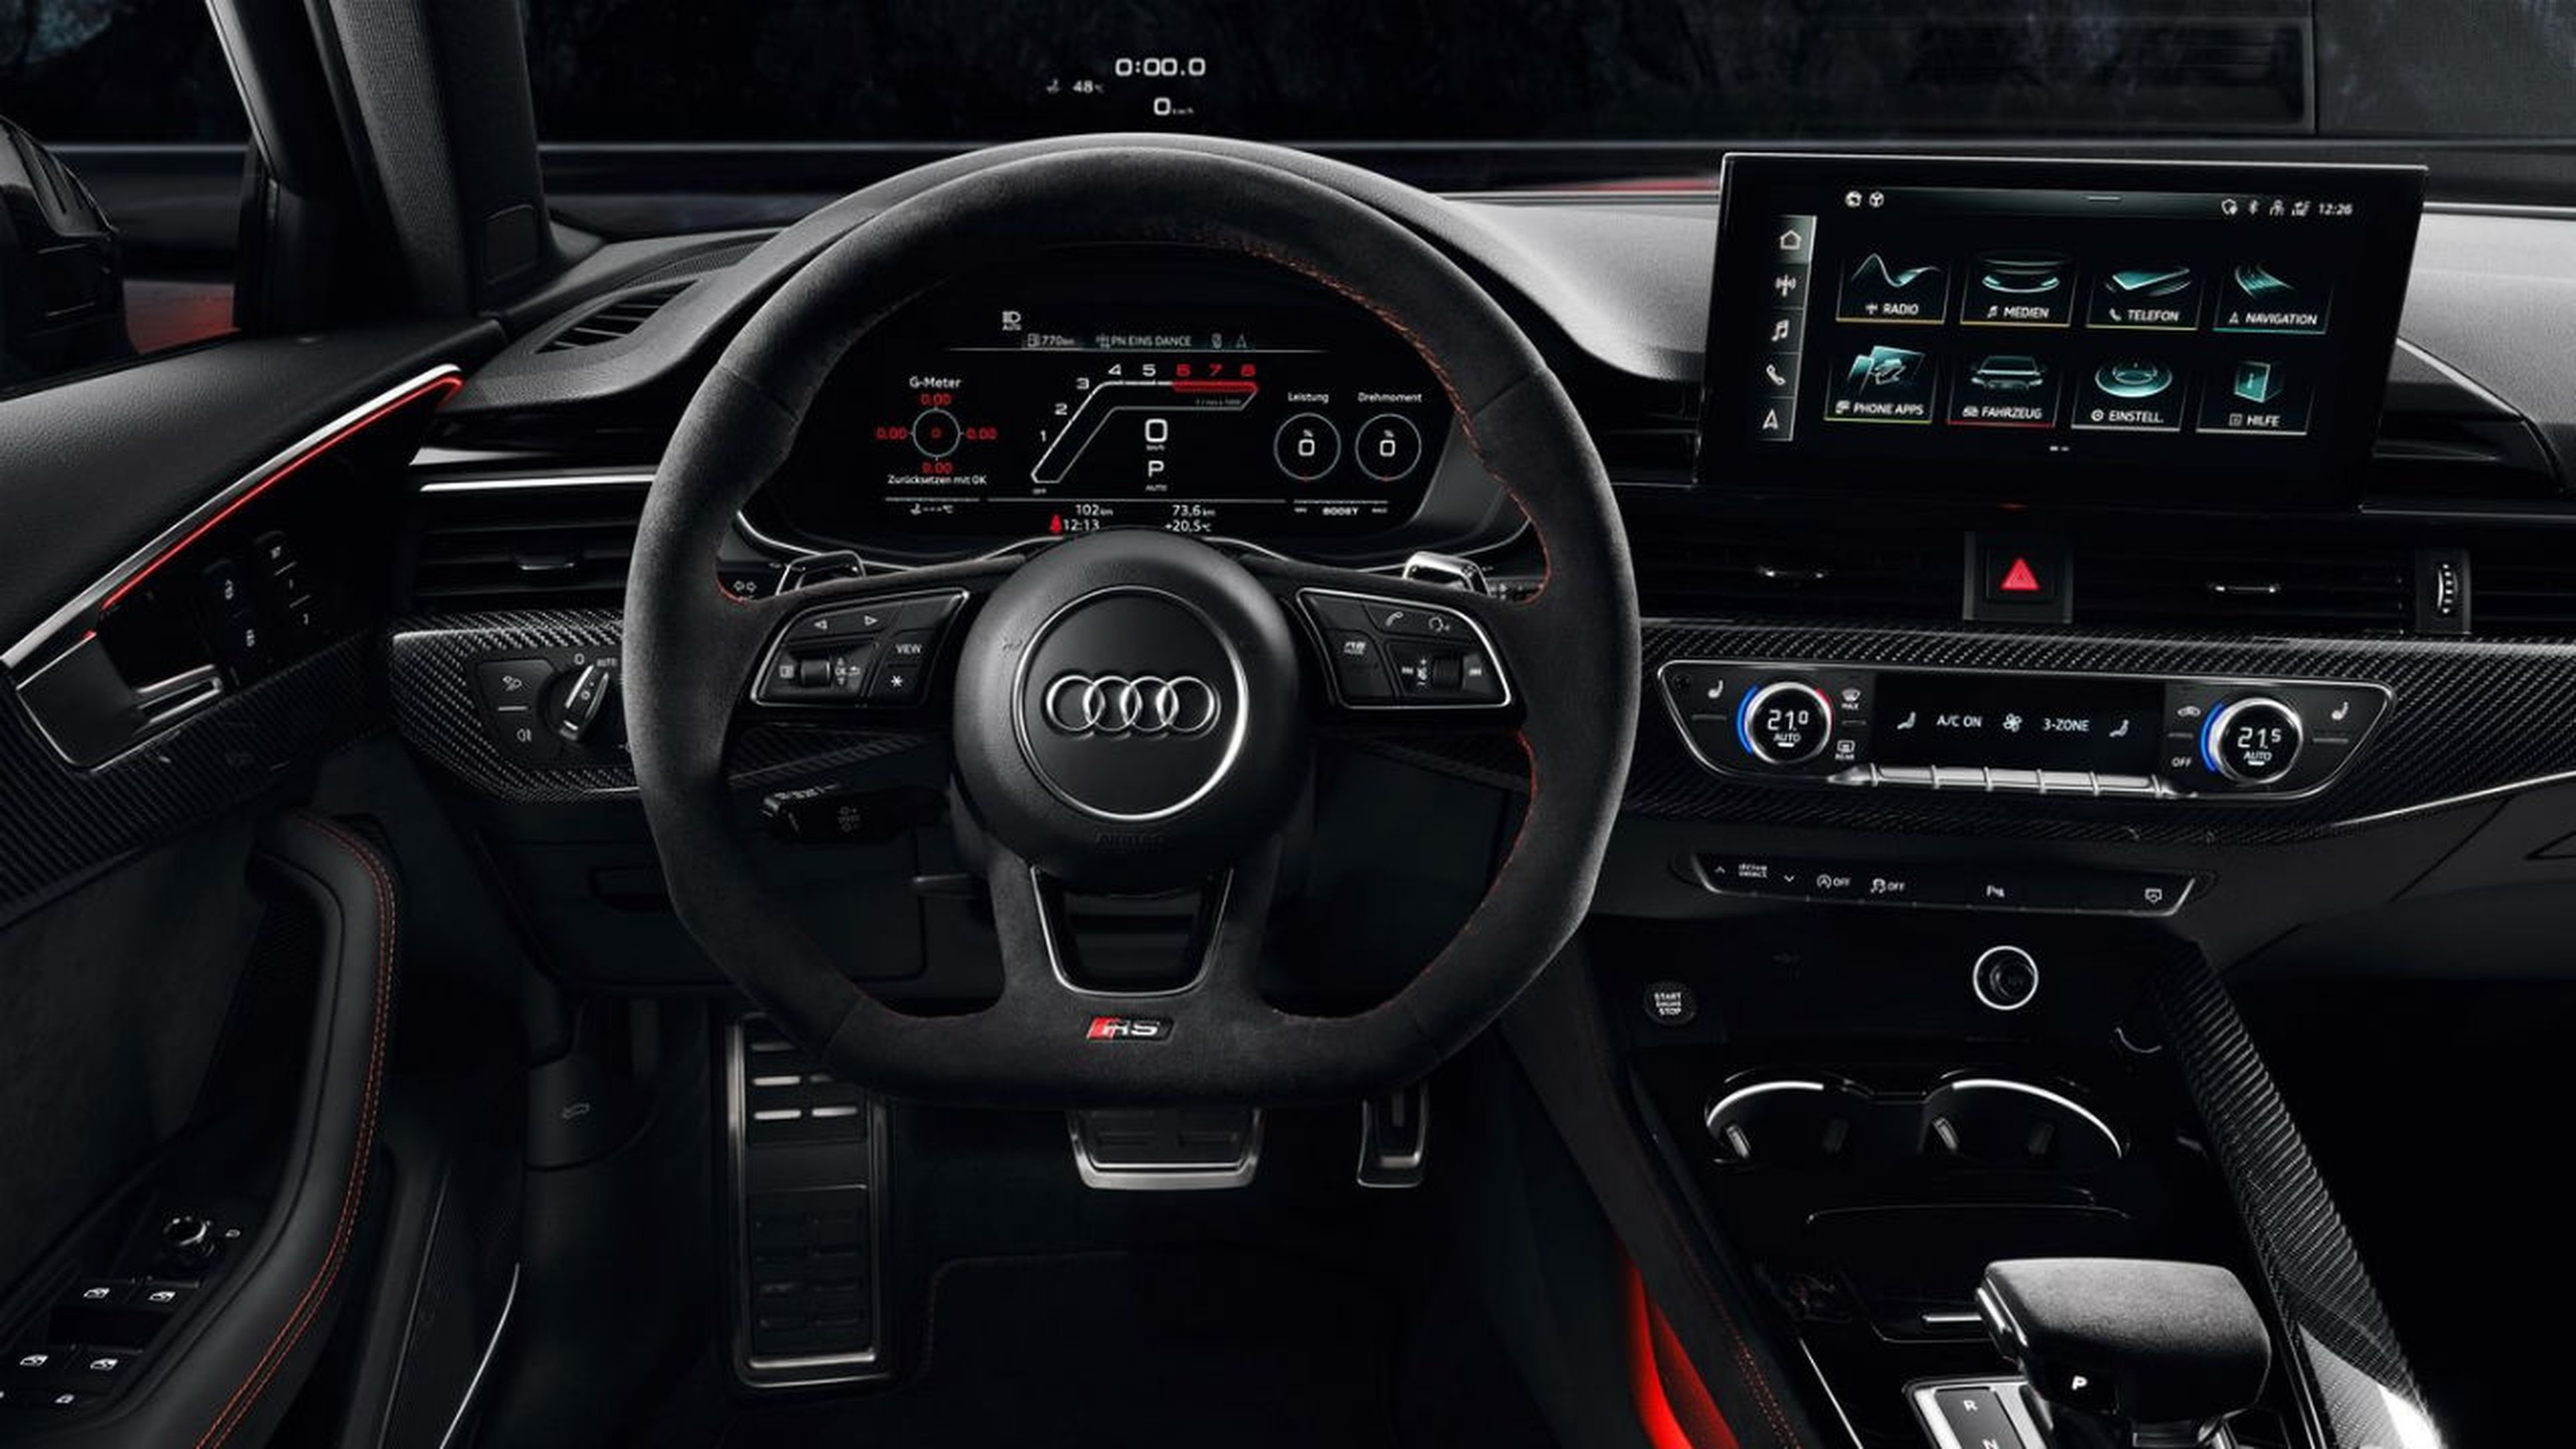 El interior del Audi RS 4 Avant 2020 destaca por la presencia del nuevo MMI touch.